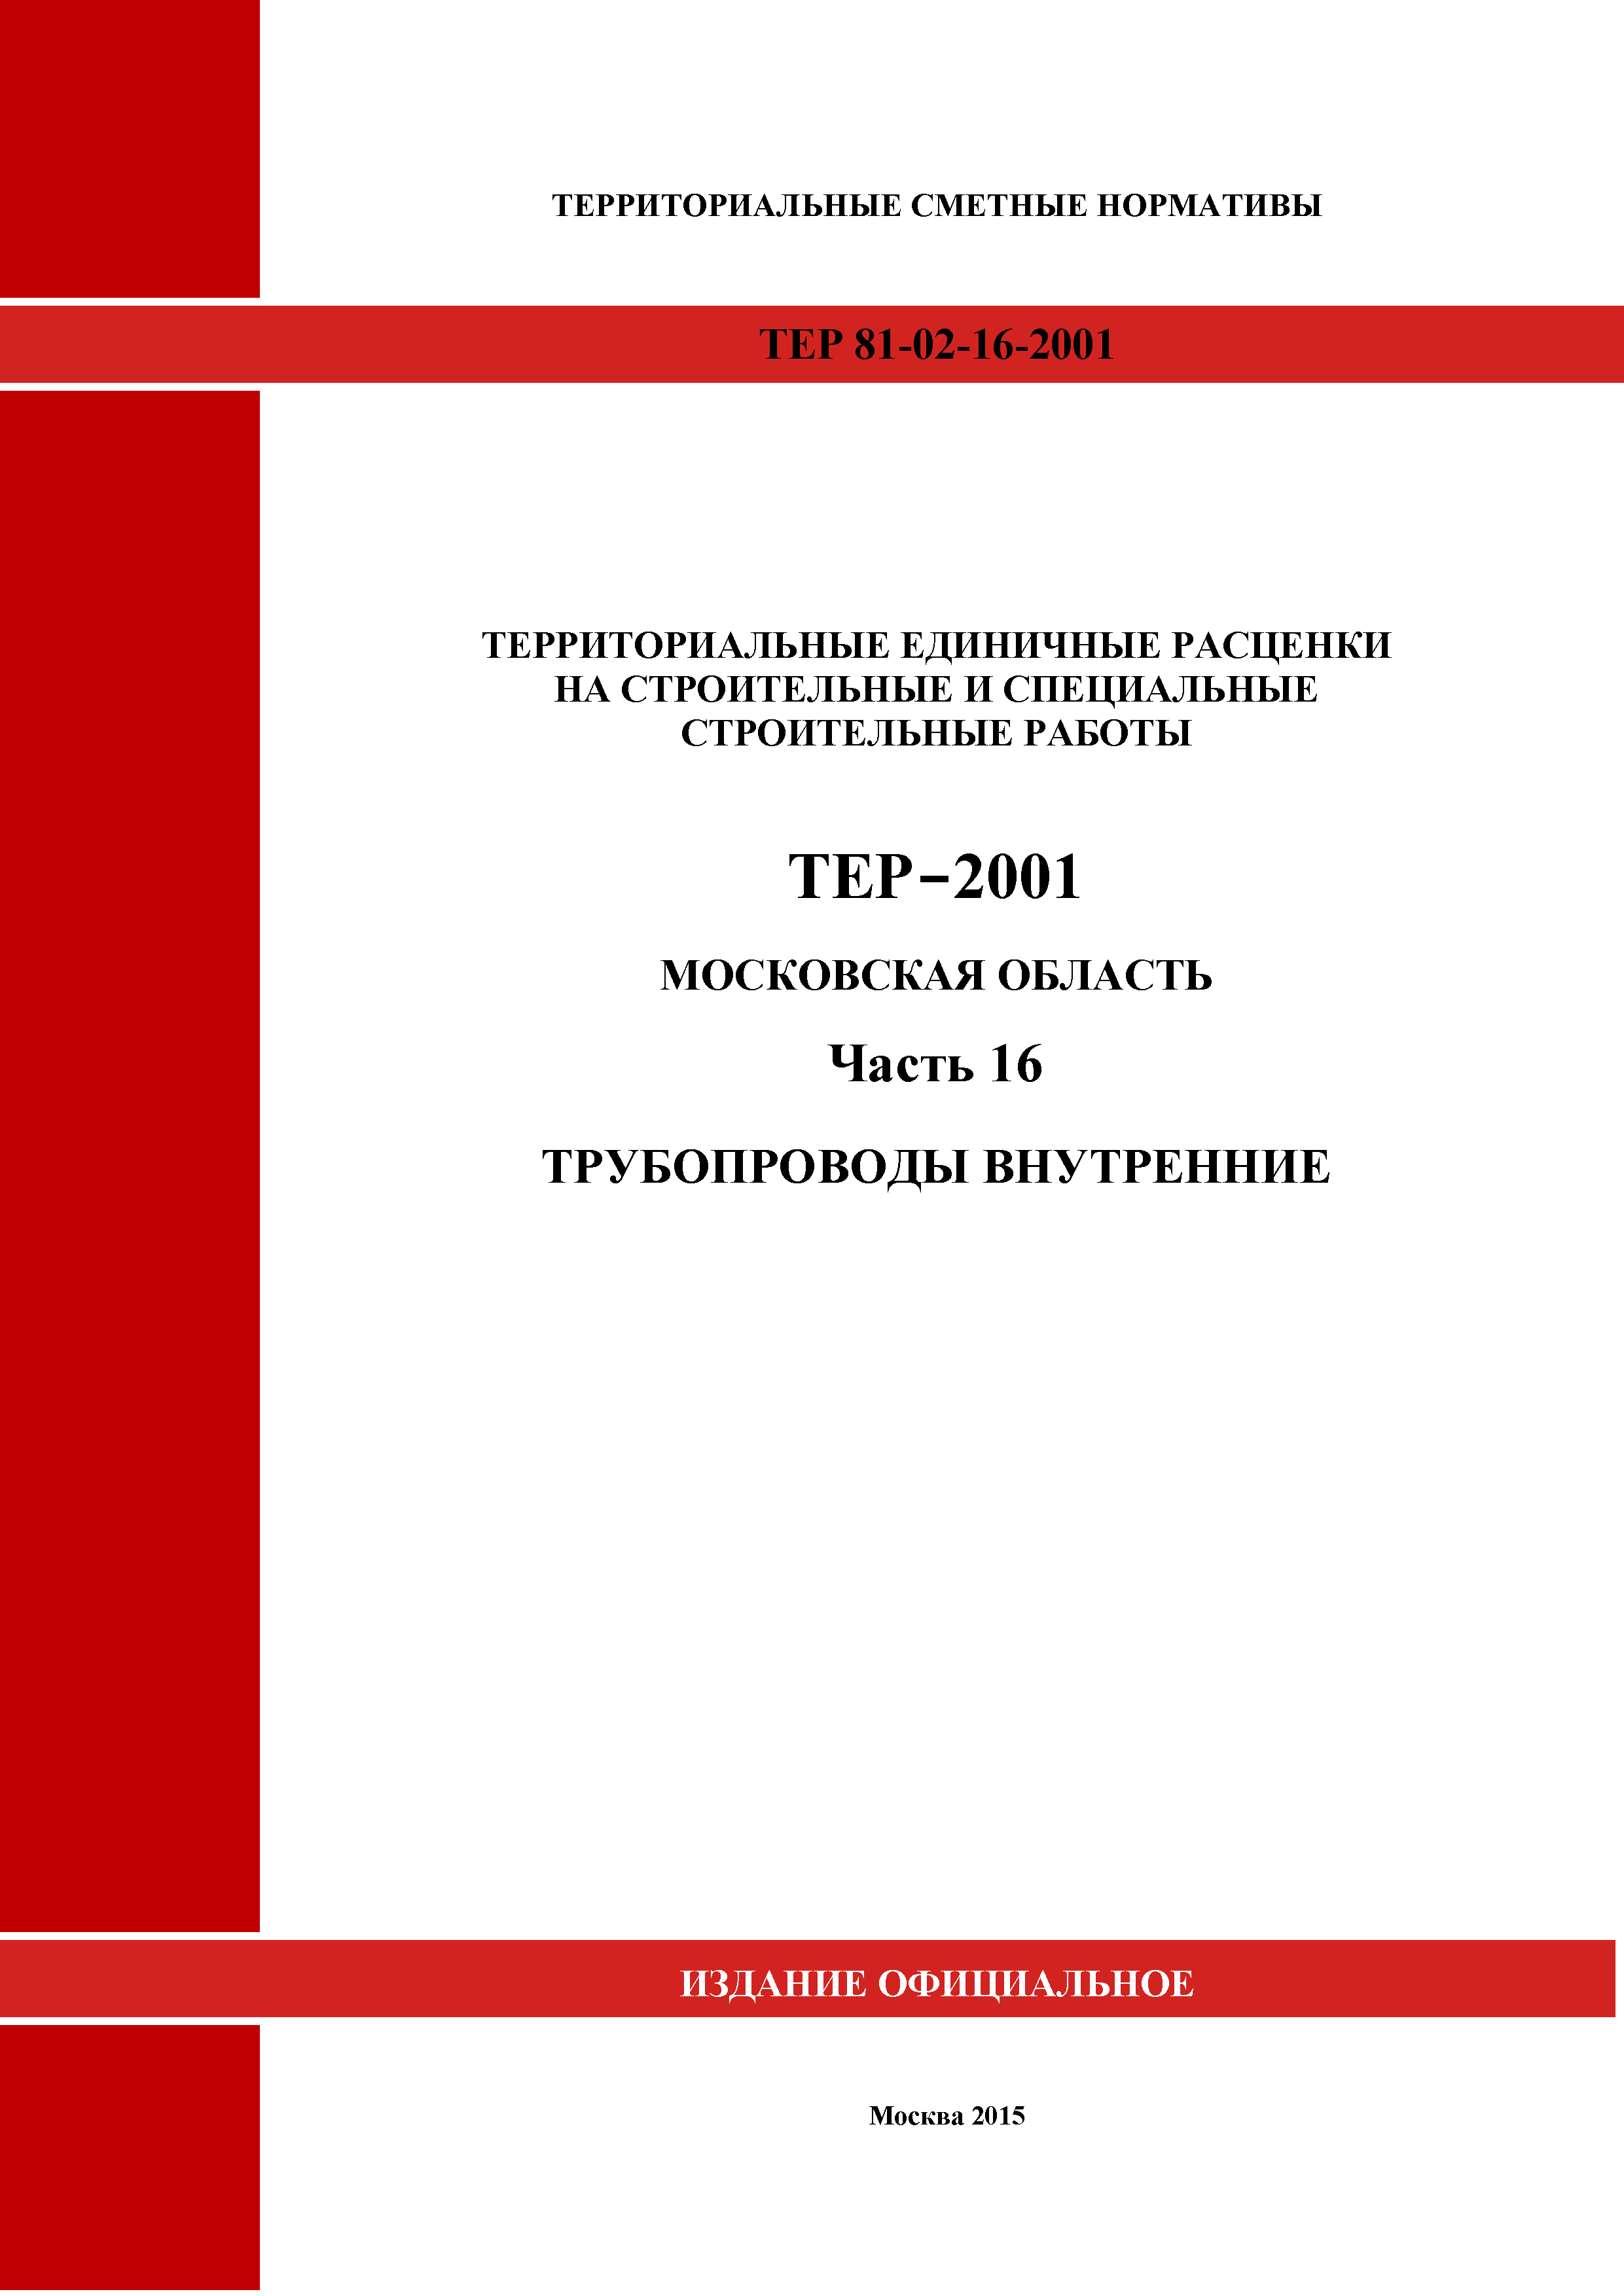 ТЕР 16-2001 Московской области